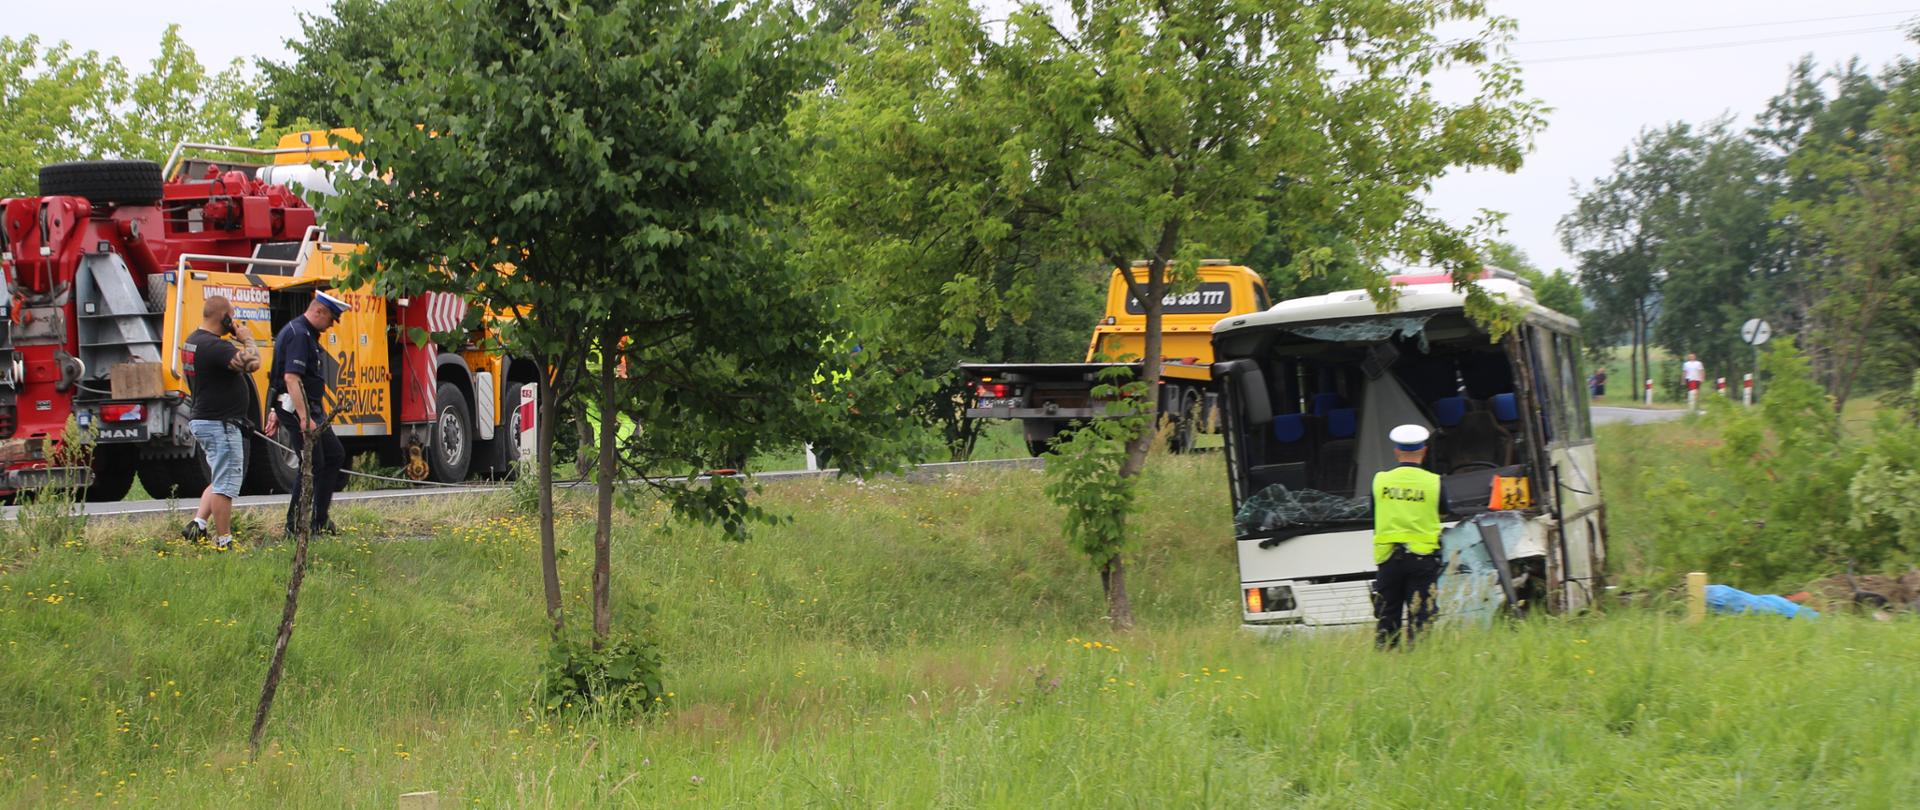 Wypadek na DK45 w Jełowej. Na zdjęciu po prawej stronie autobus w rowie. Autobus zdewastowany - po wypadku. Po lewej stornie kadru straż pożarna oraz fragment drogi.